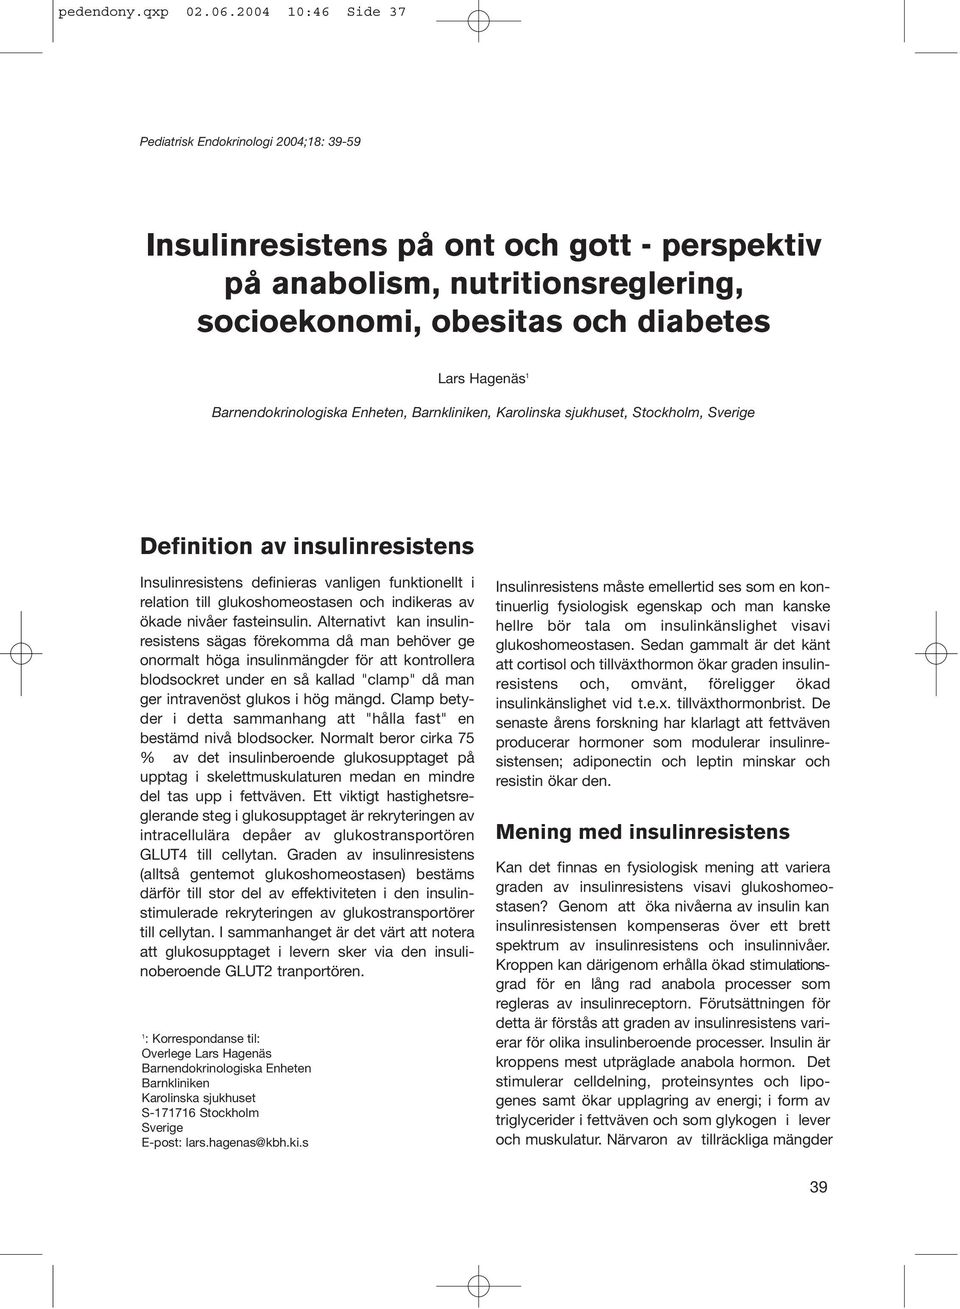 Barnendokrinologiska Enheten, Barnkliniken, Karolinska sjukhuset, Stockholm, Sverige Definition av insulinresistens Insulinresistens definieras vanligen funktionellt i relation till glukoshomeostasen